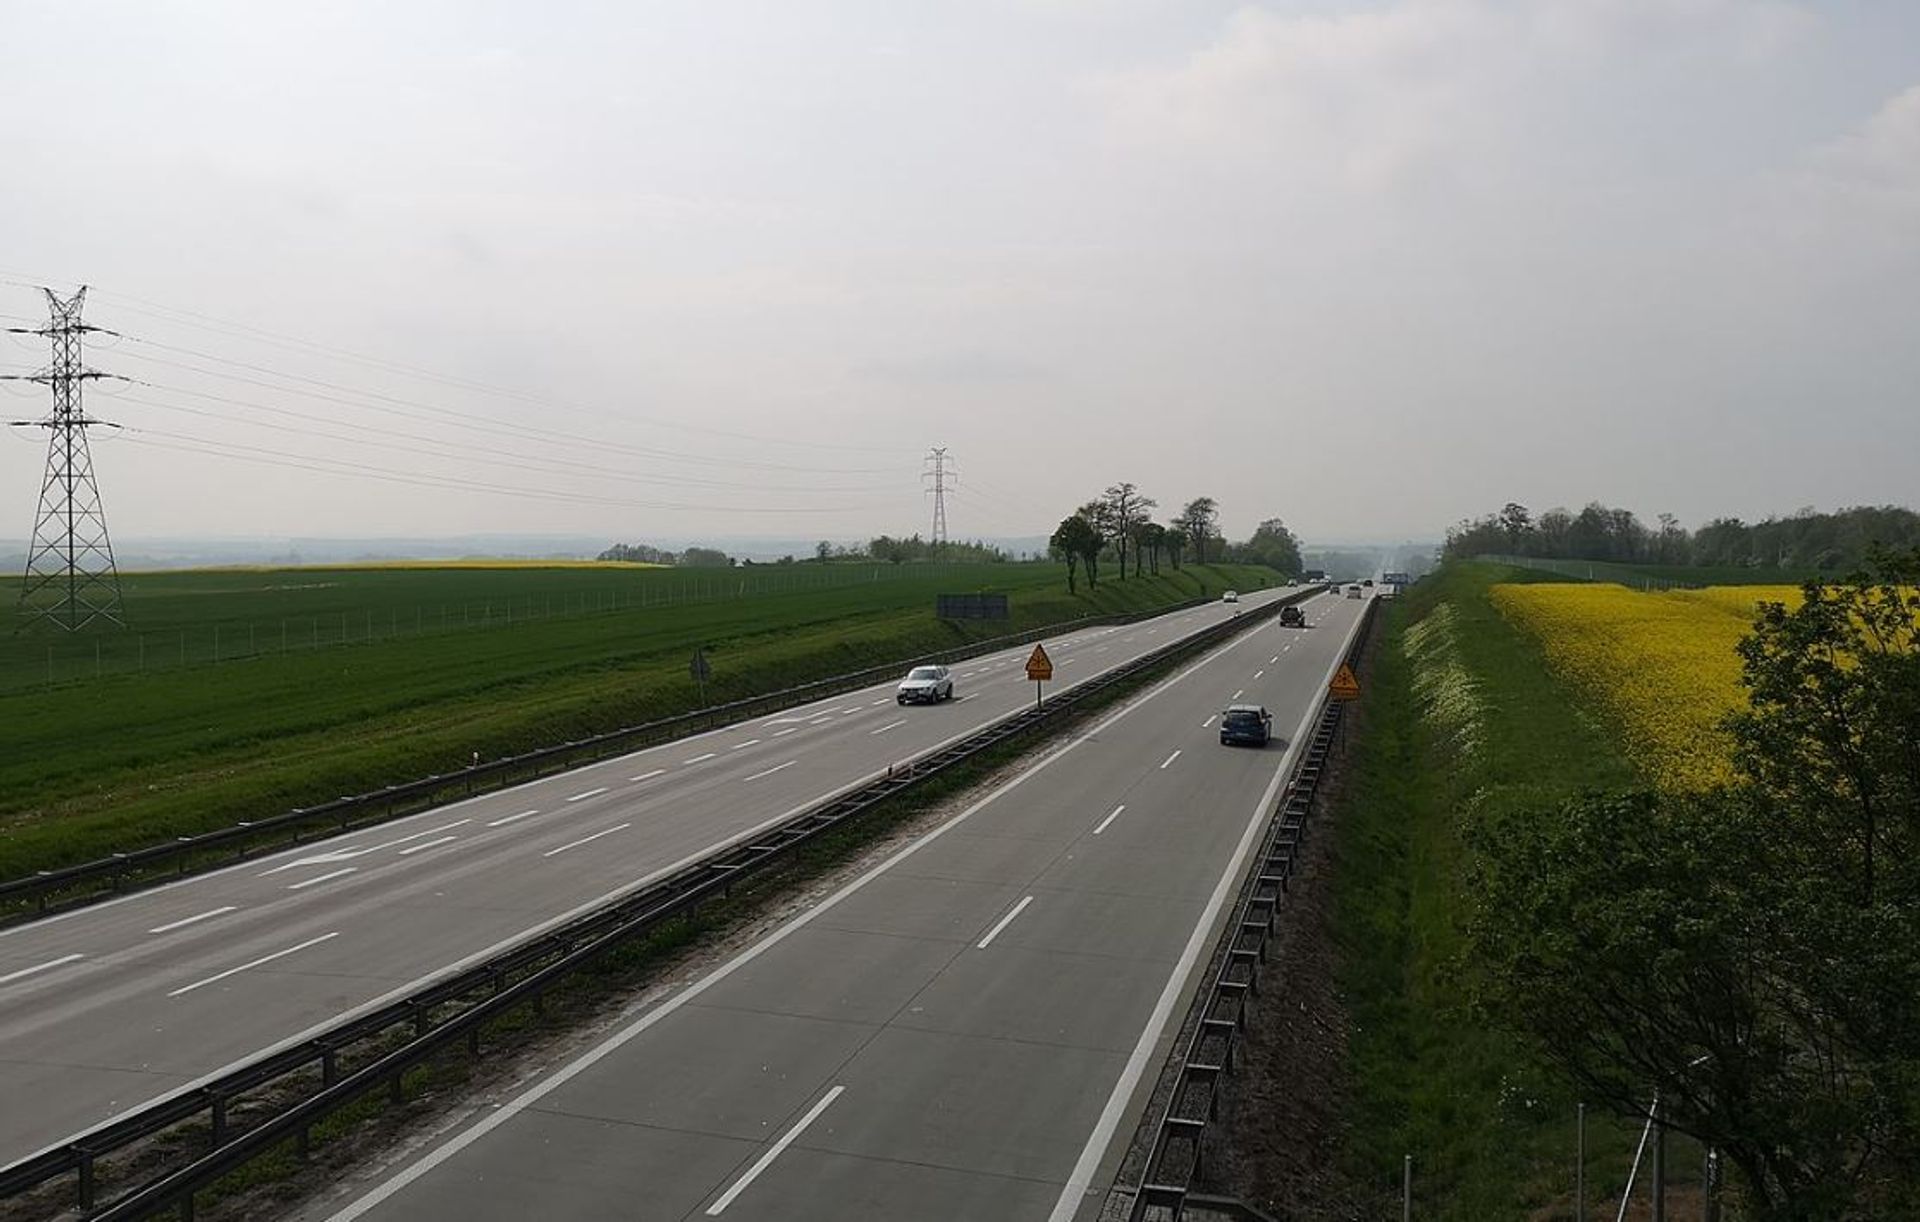 Państwowe autostrady w Polsce mają być bezpłatne